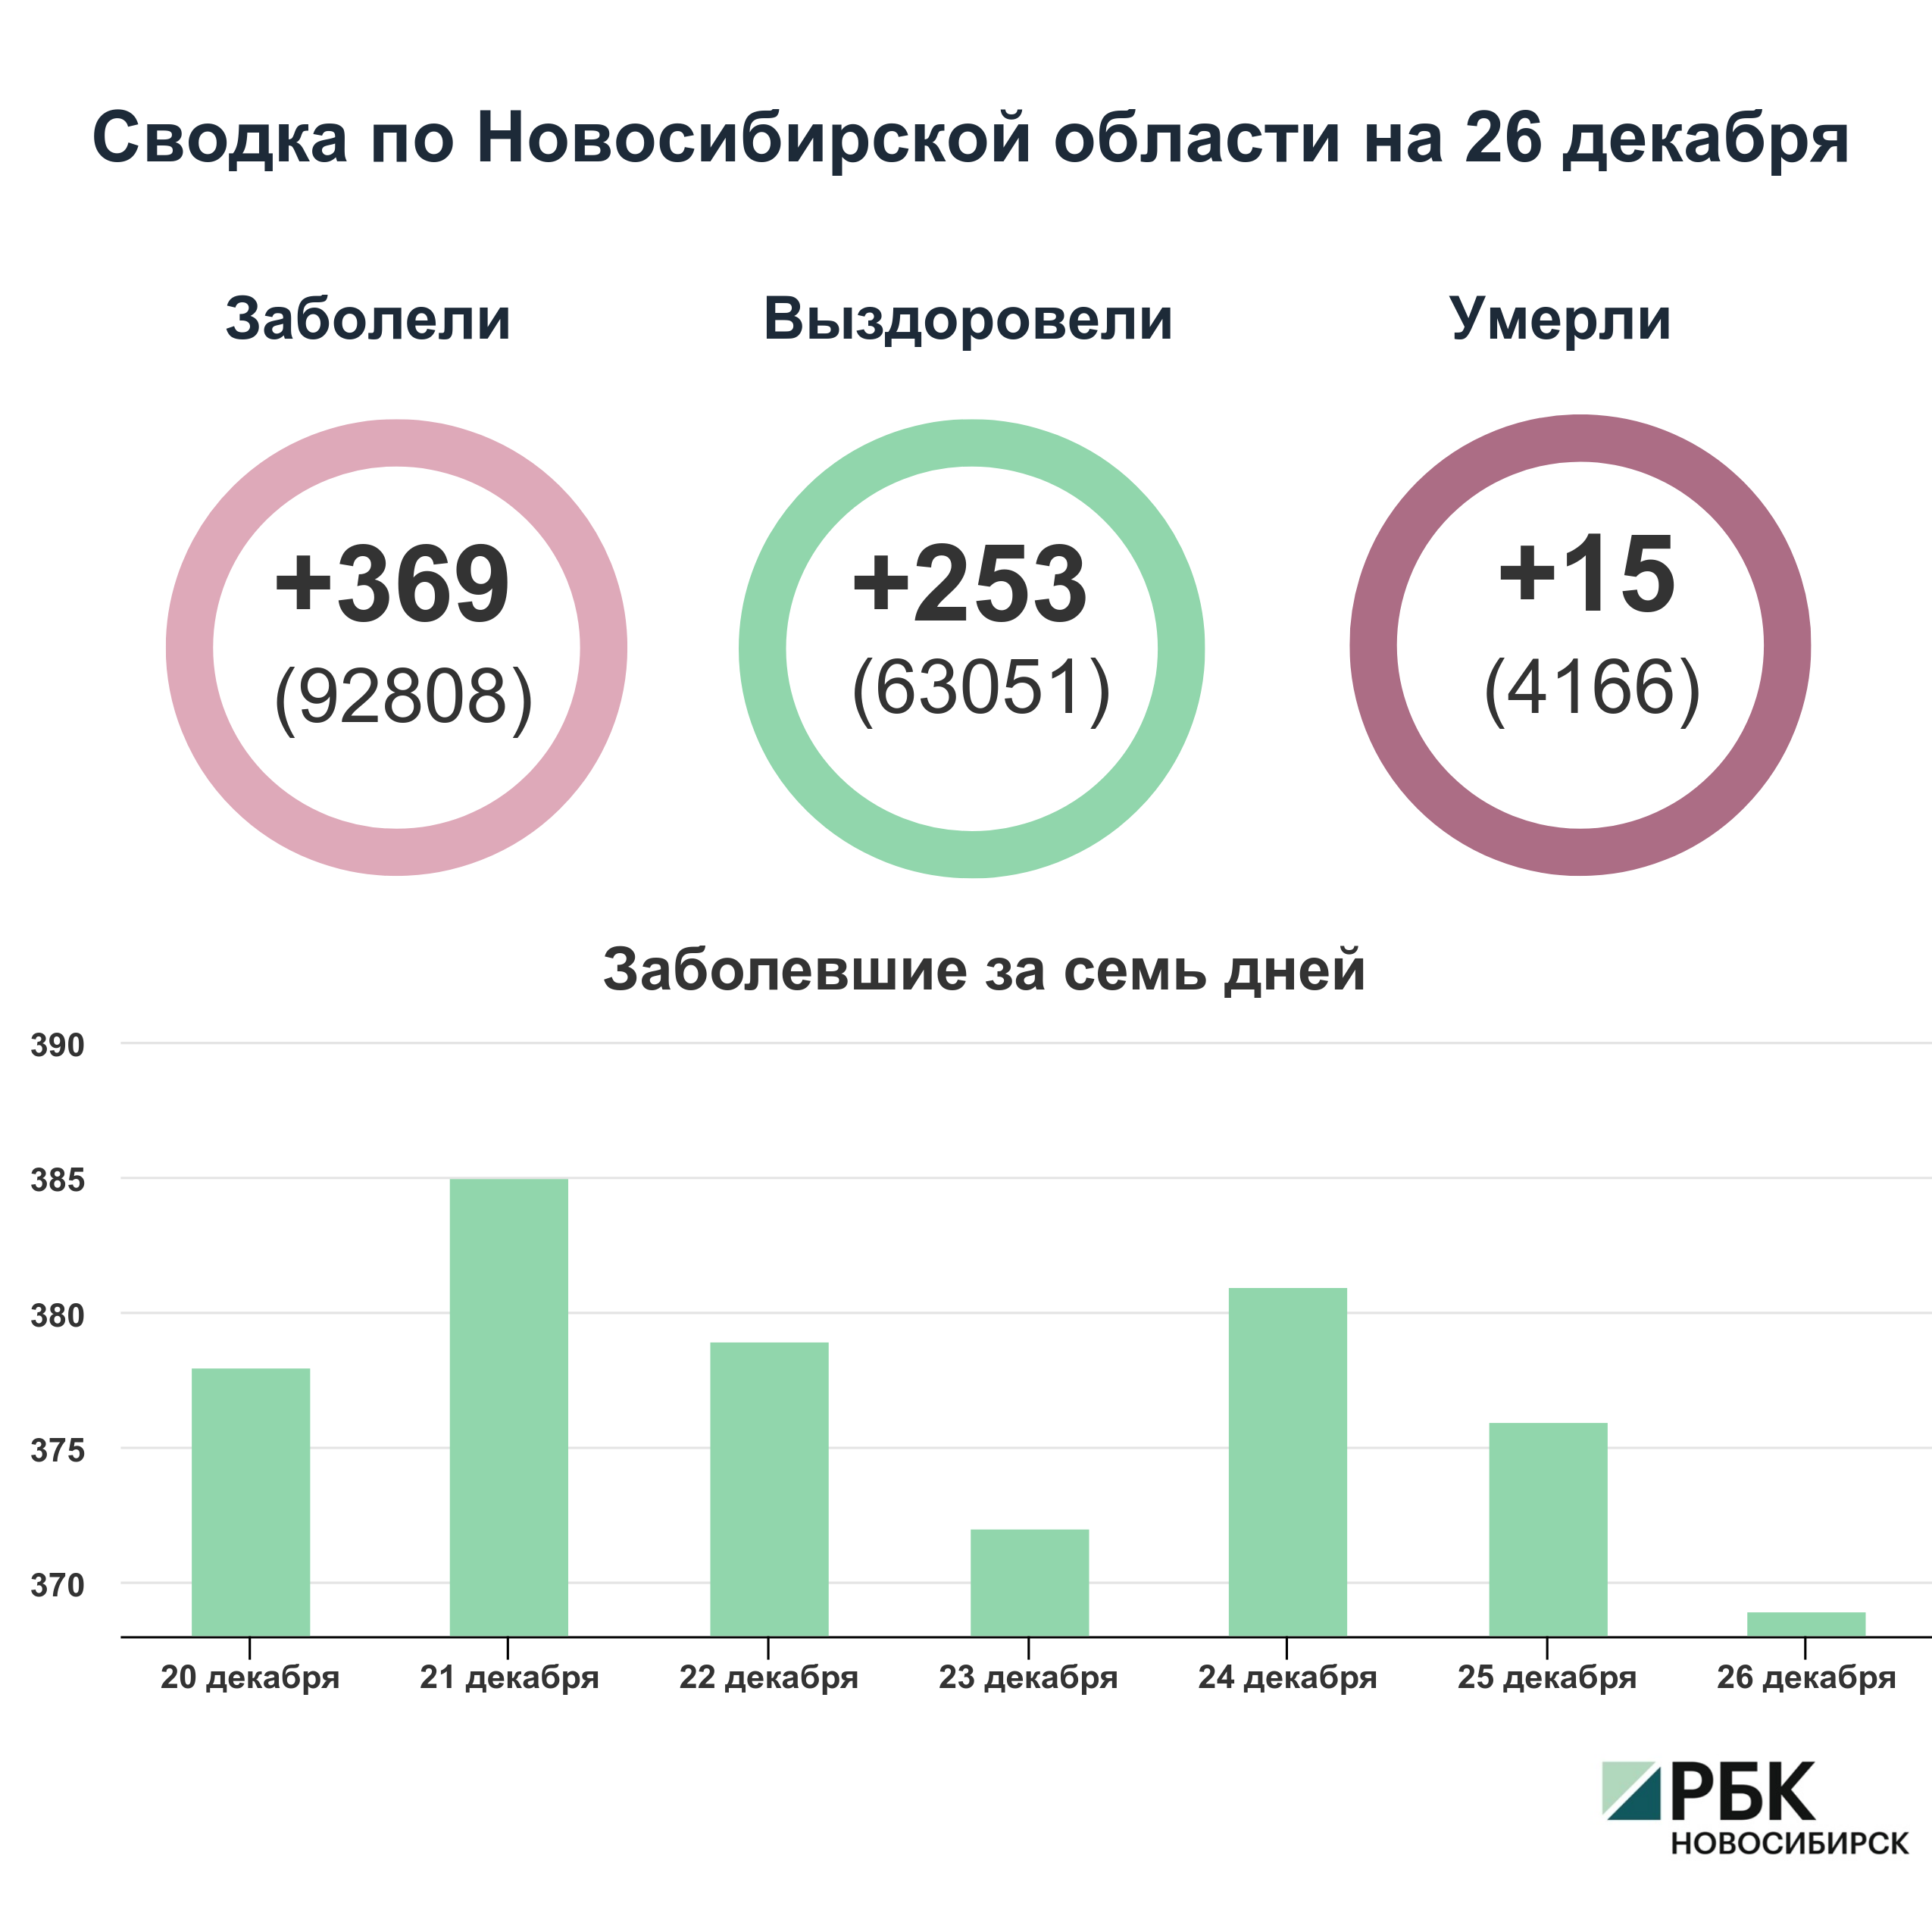 Коронавирус в Новосибирске: сводка на 26 декабря